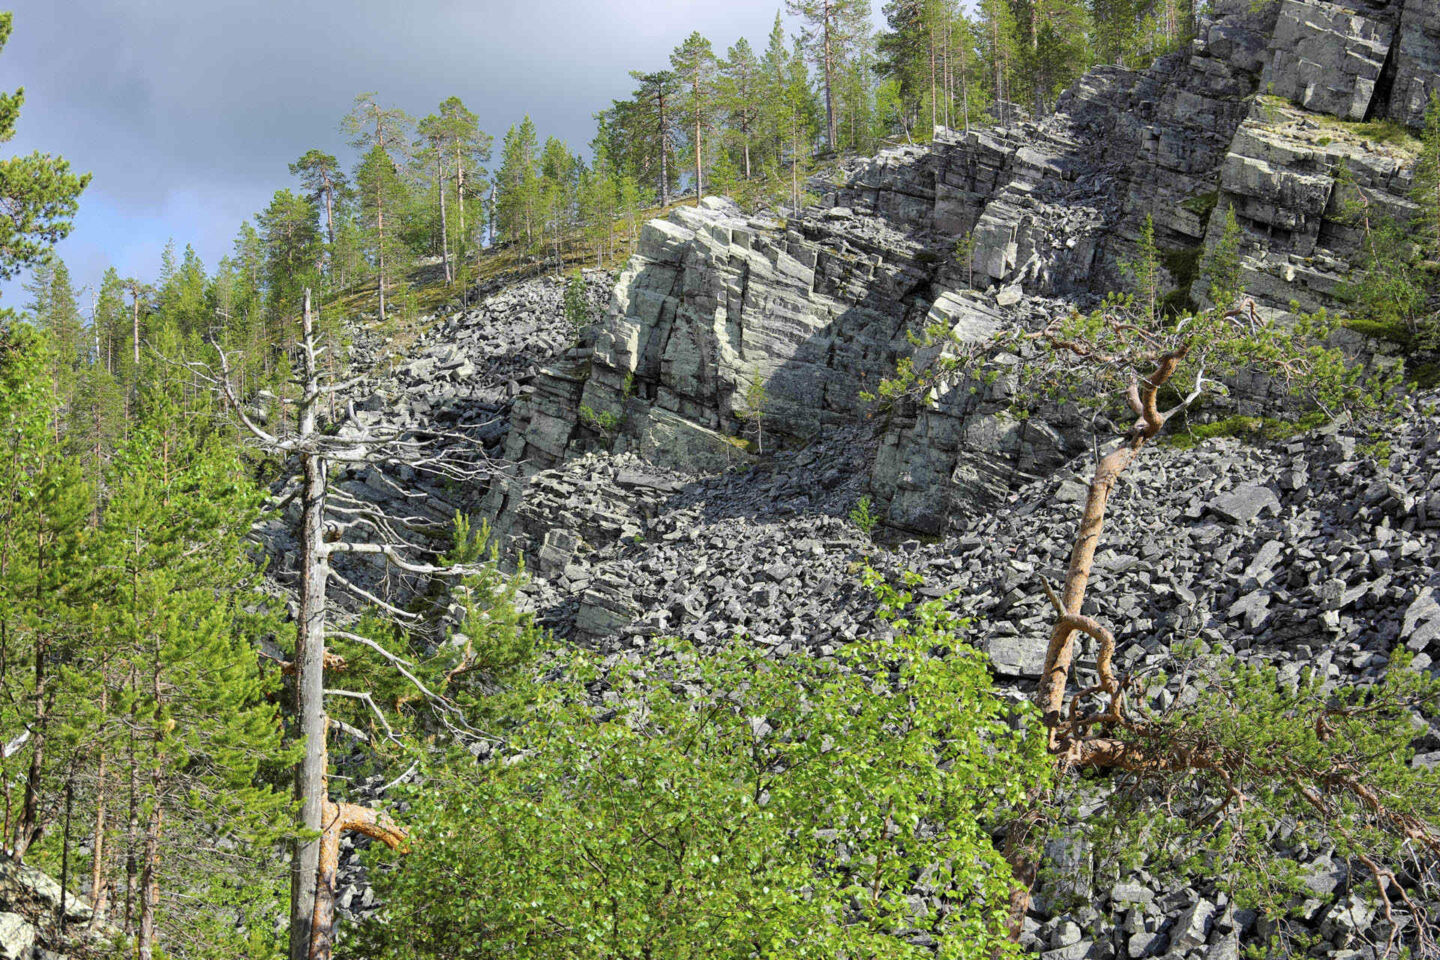 Aittakuru in Pelkosenniemi, Lapland, Finland